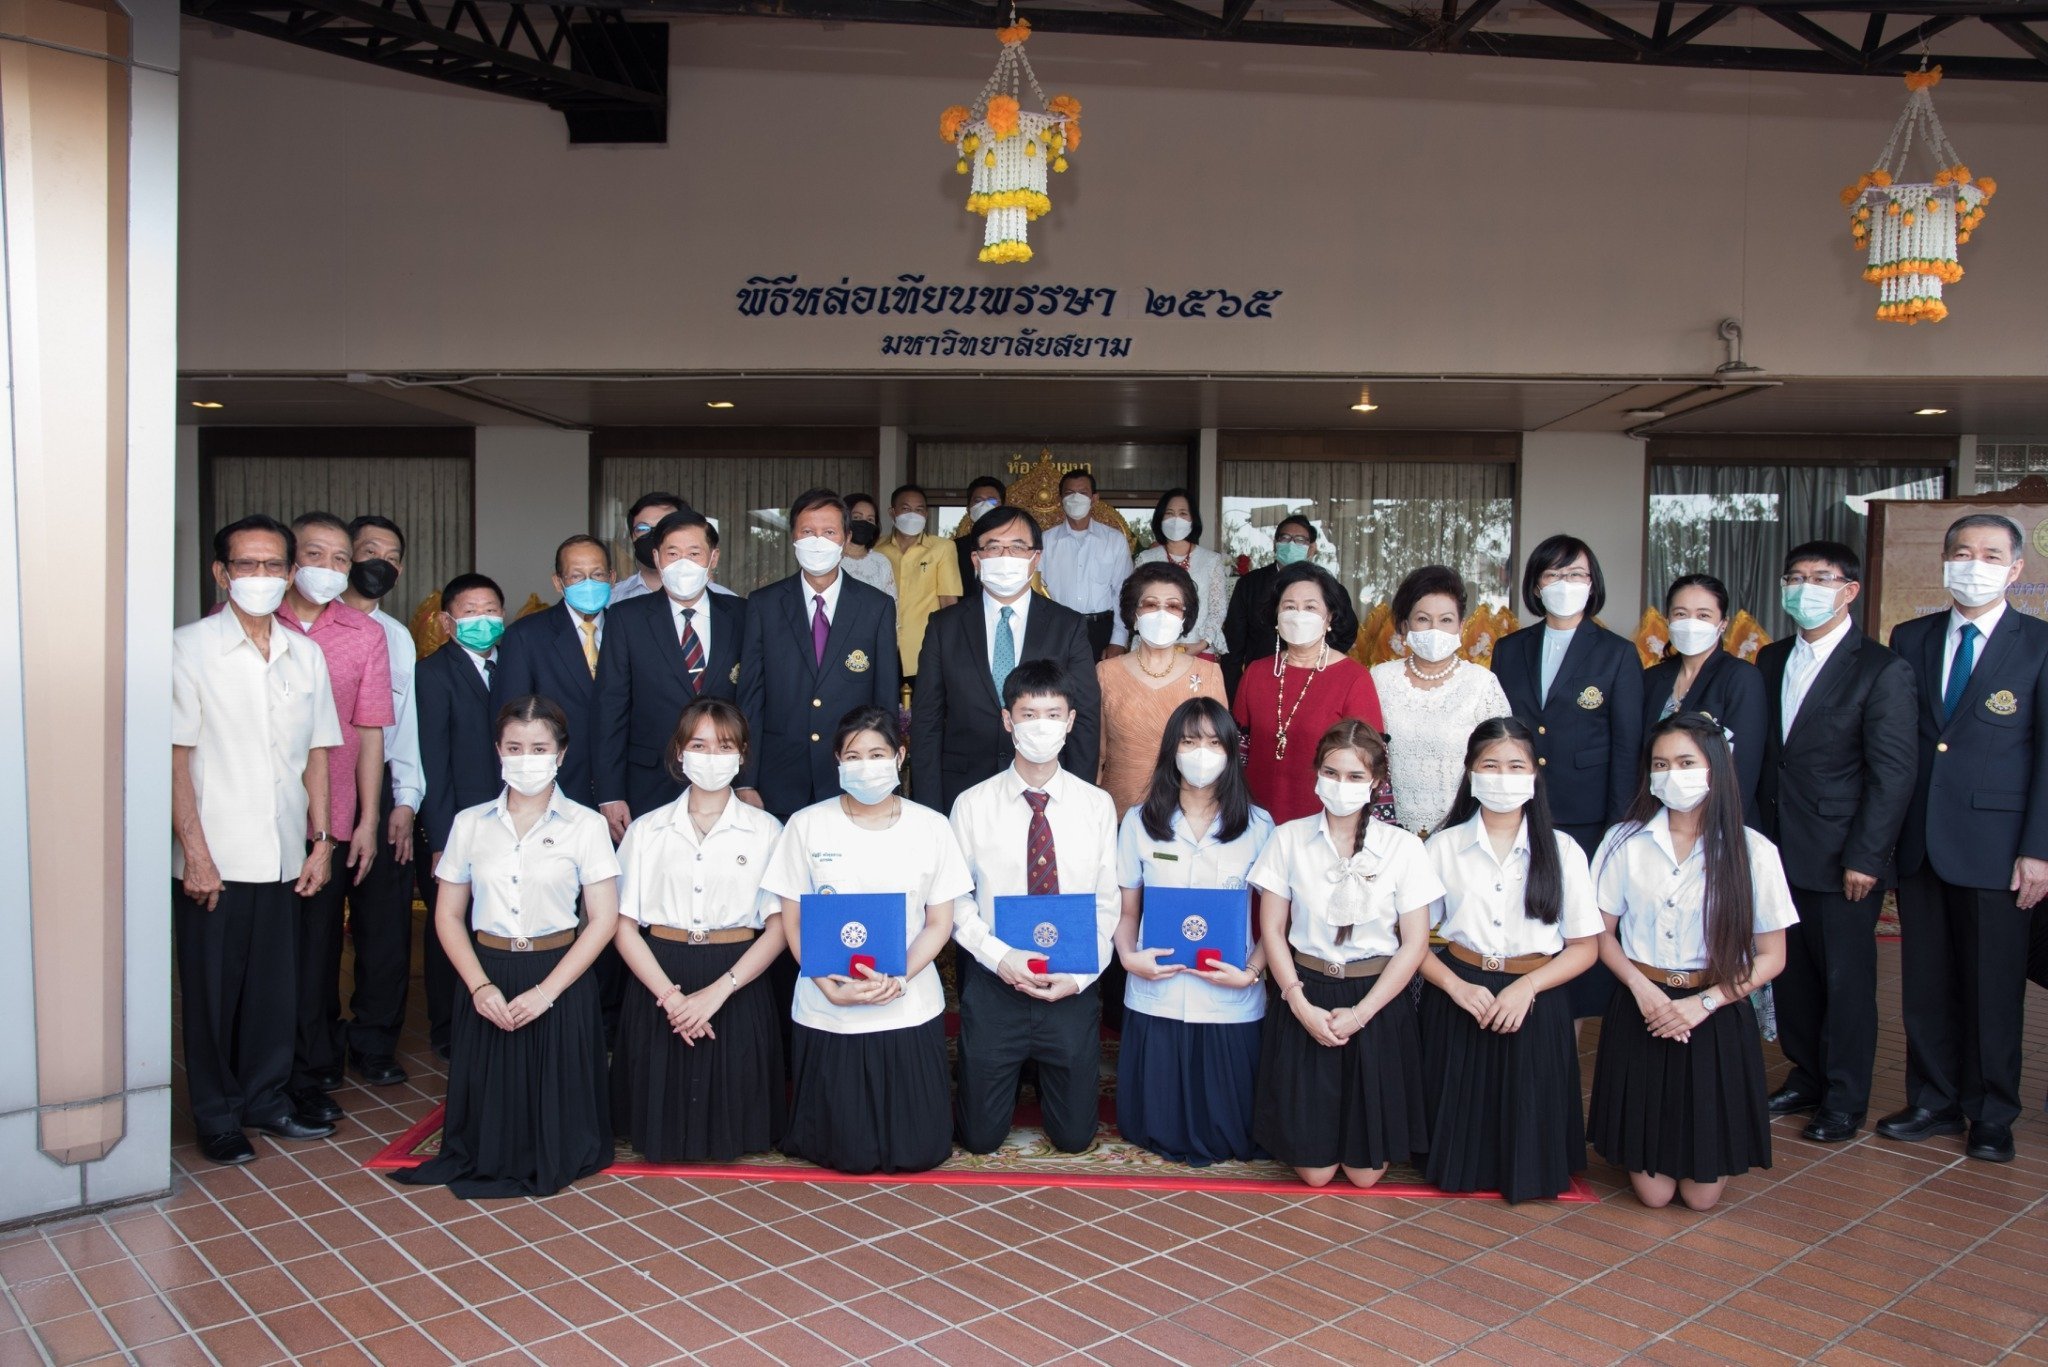 รางวัลนักศึกษาความประพฤติดี ประจำปี 2565 จากพุทธสมาคมแห่งประเทศไทย ในพระบรมราชูปถัมภ์